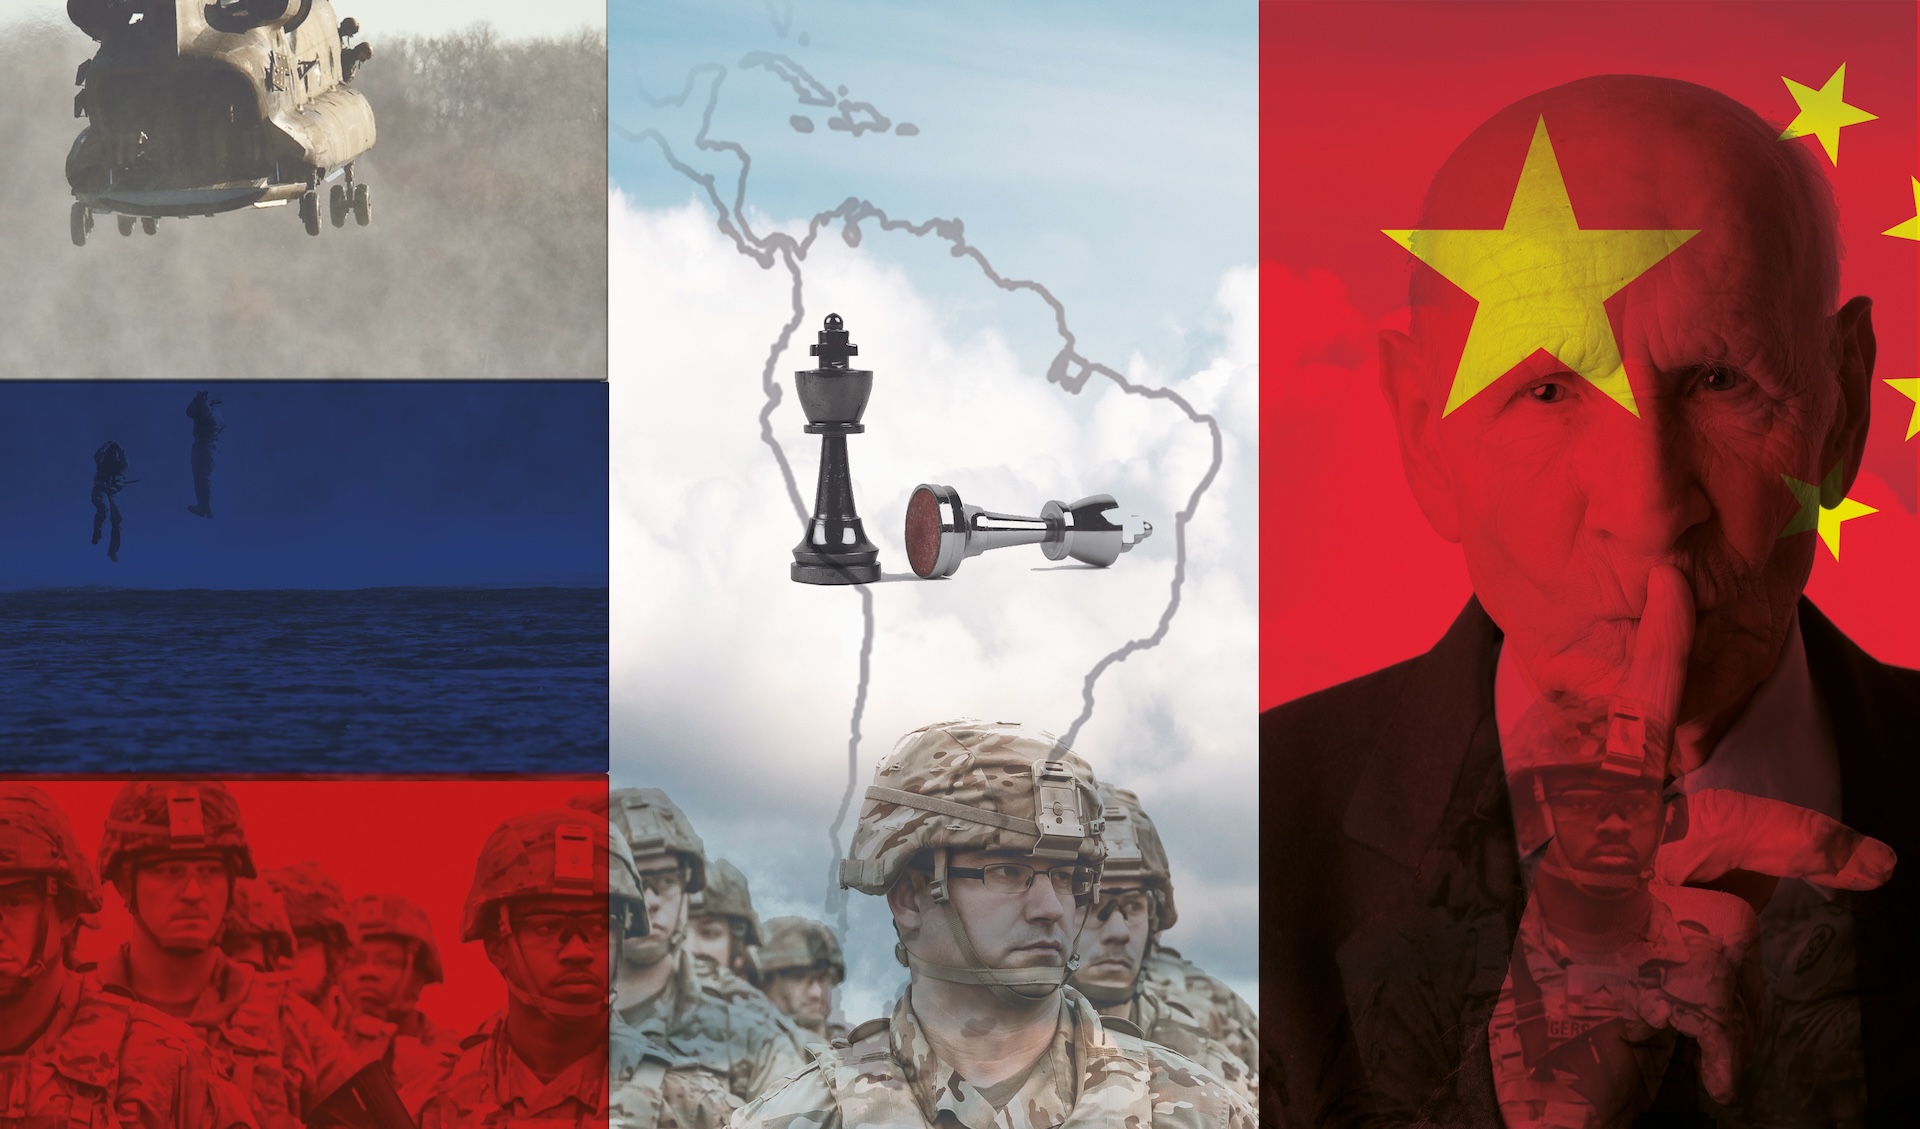 La nueva batalla silenciosa: Entrenamiento militar y armas de China y Rusia en el terreno de América Latina